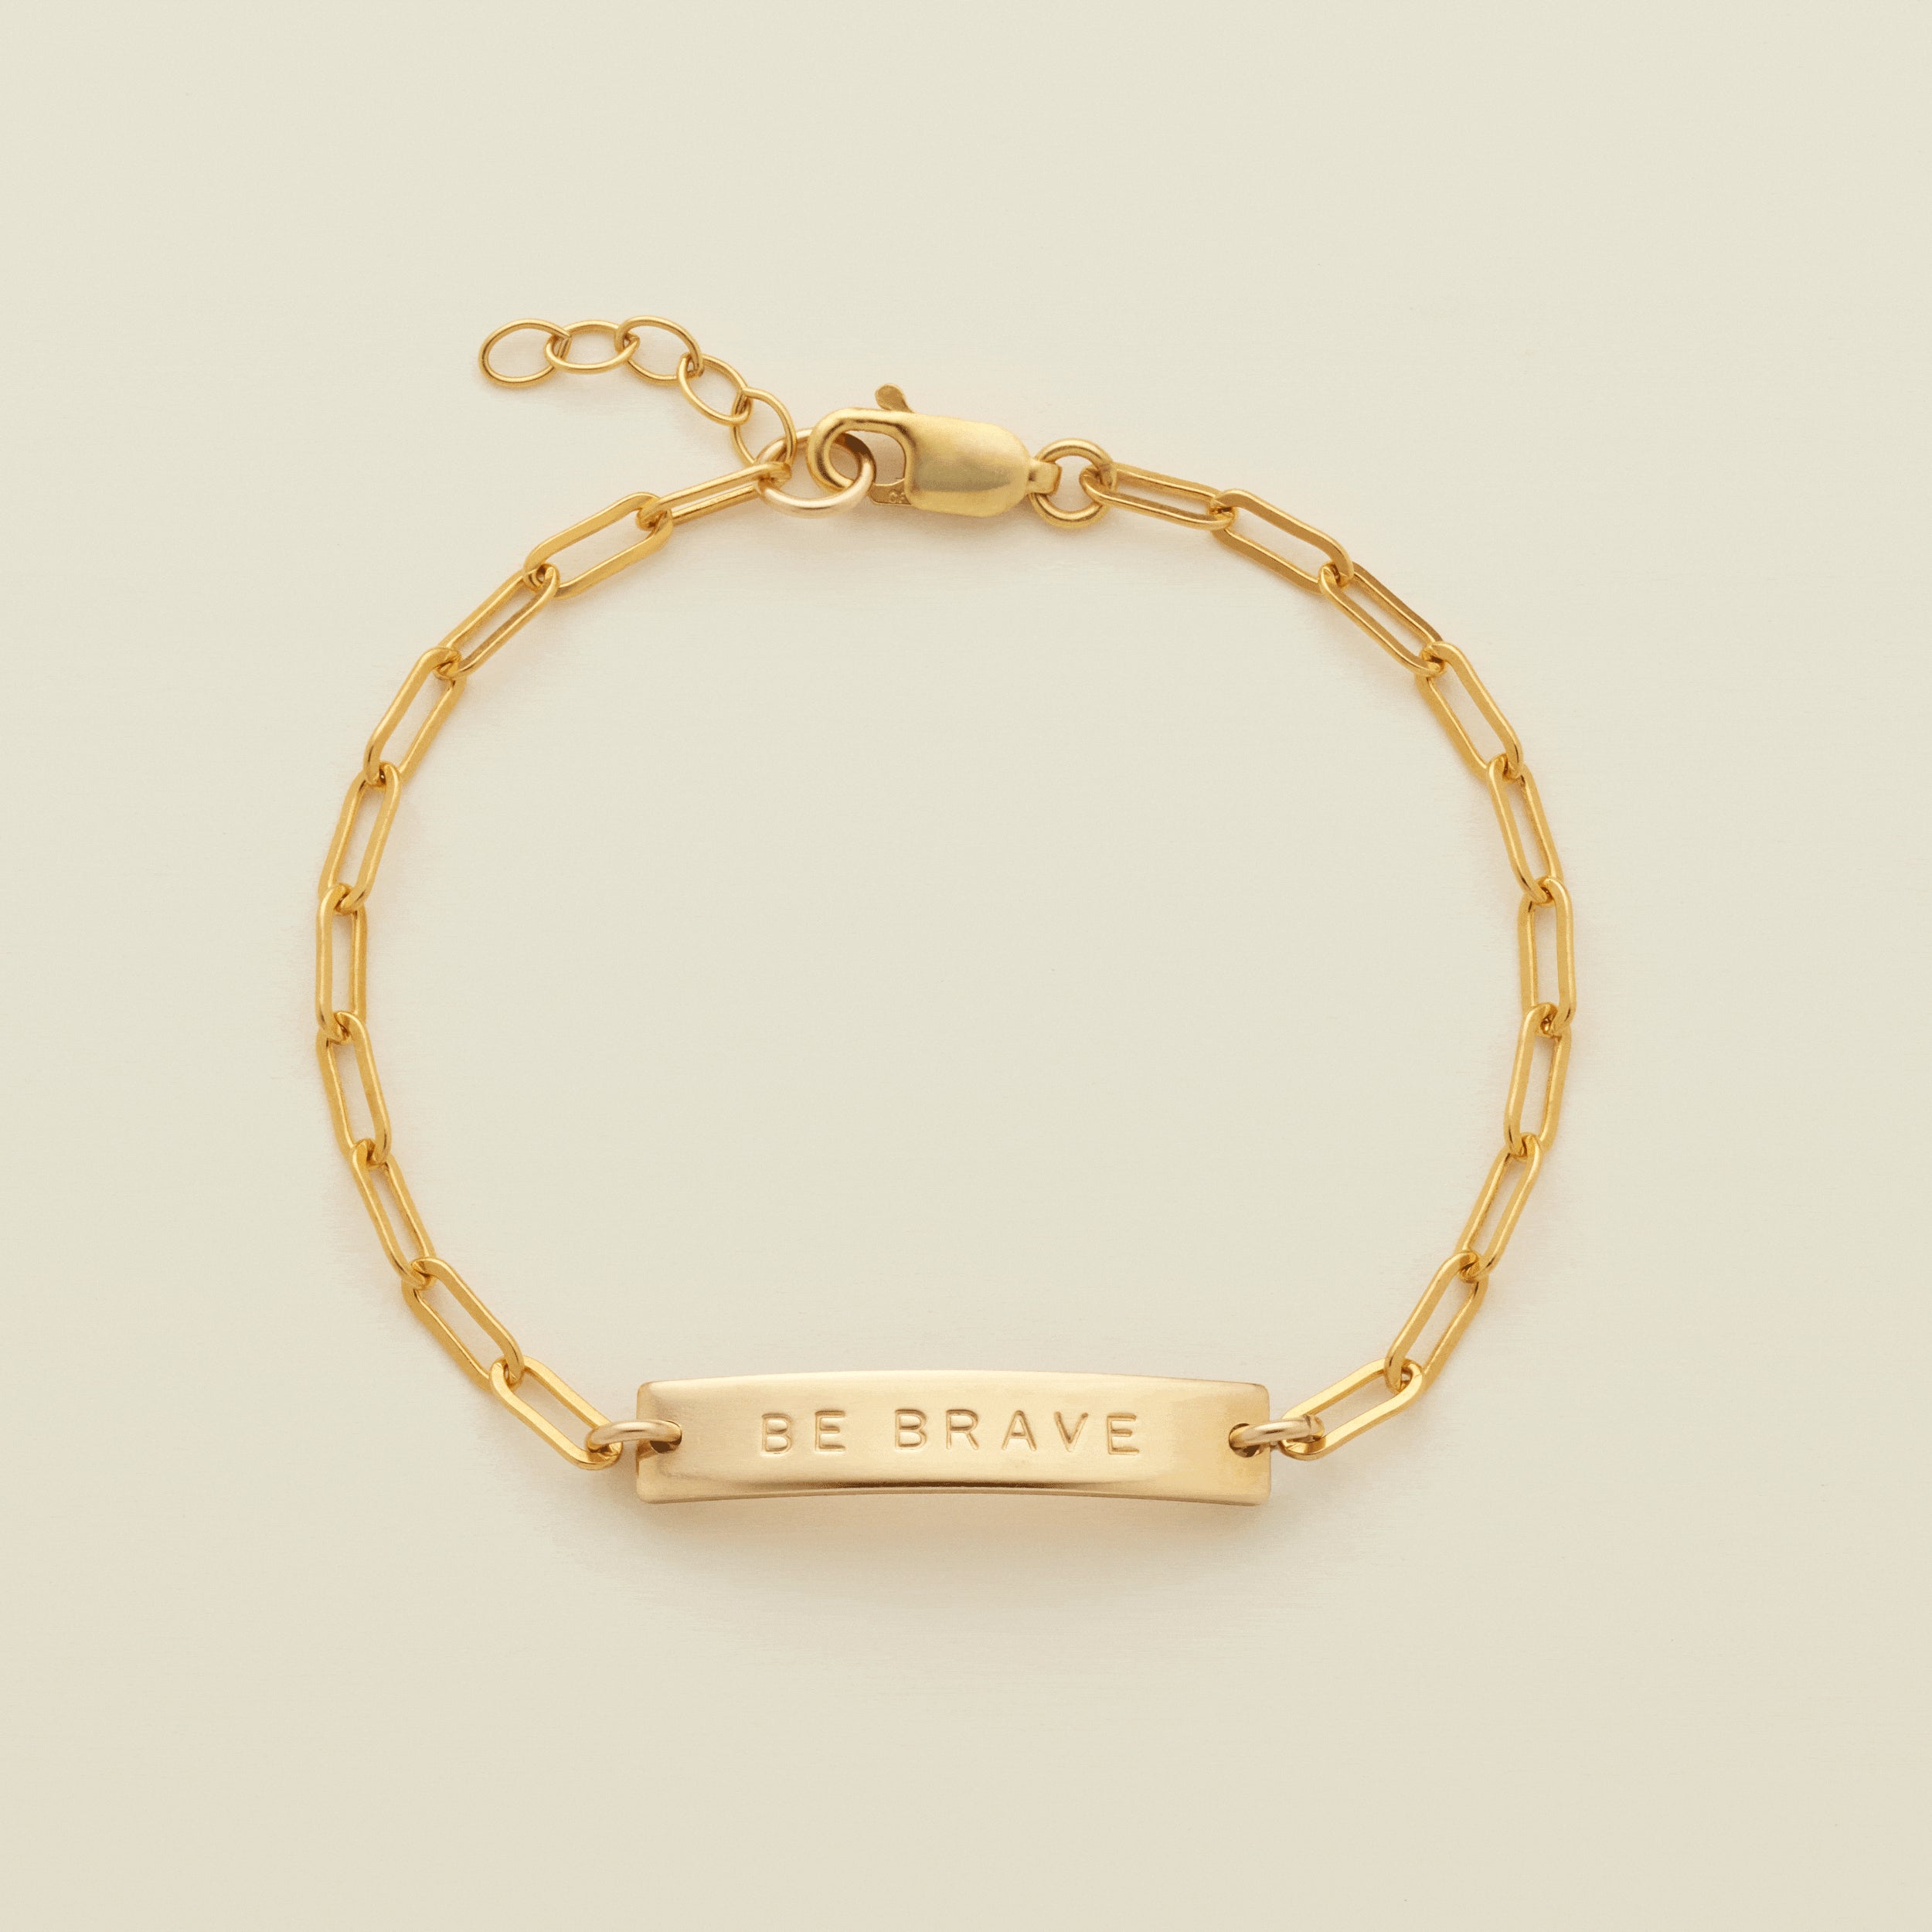 Jude Bar Bracelet Gold Filled / 6" Bracelet